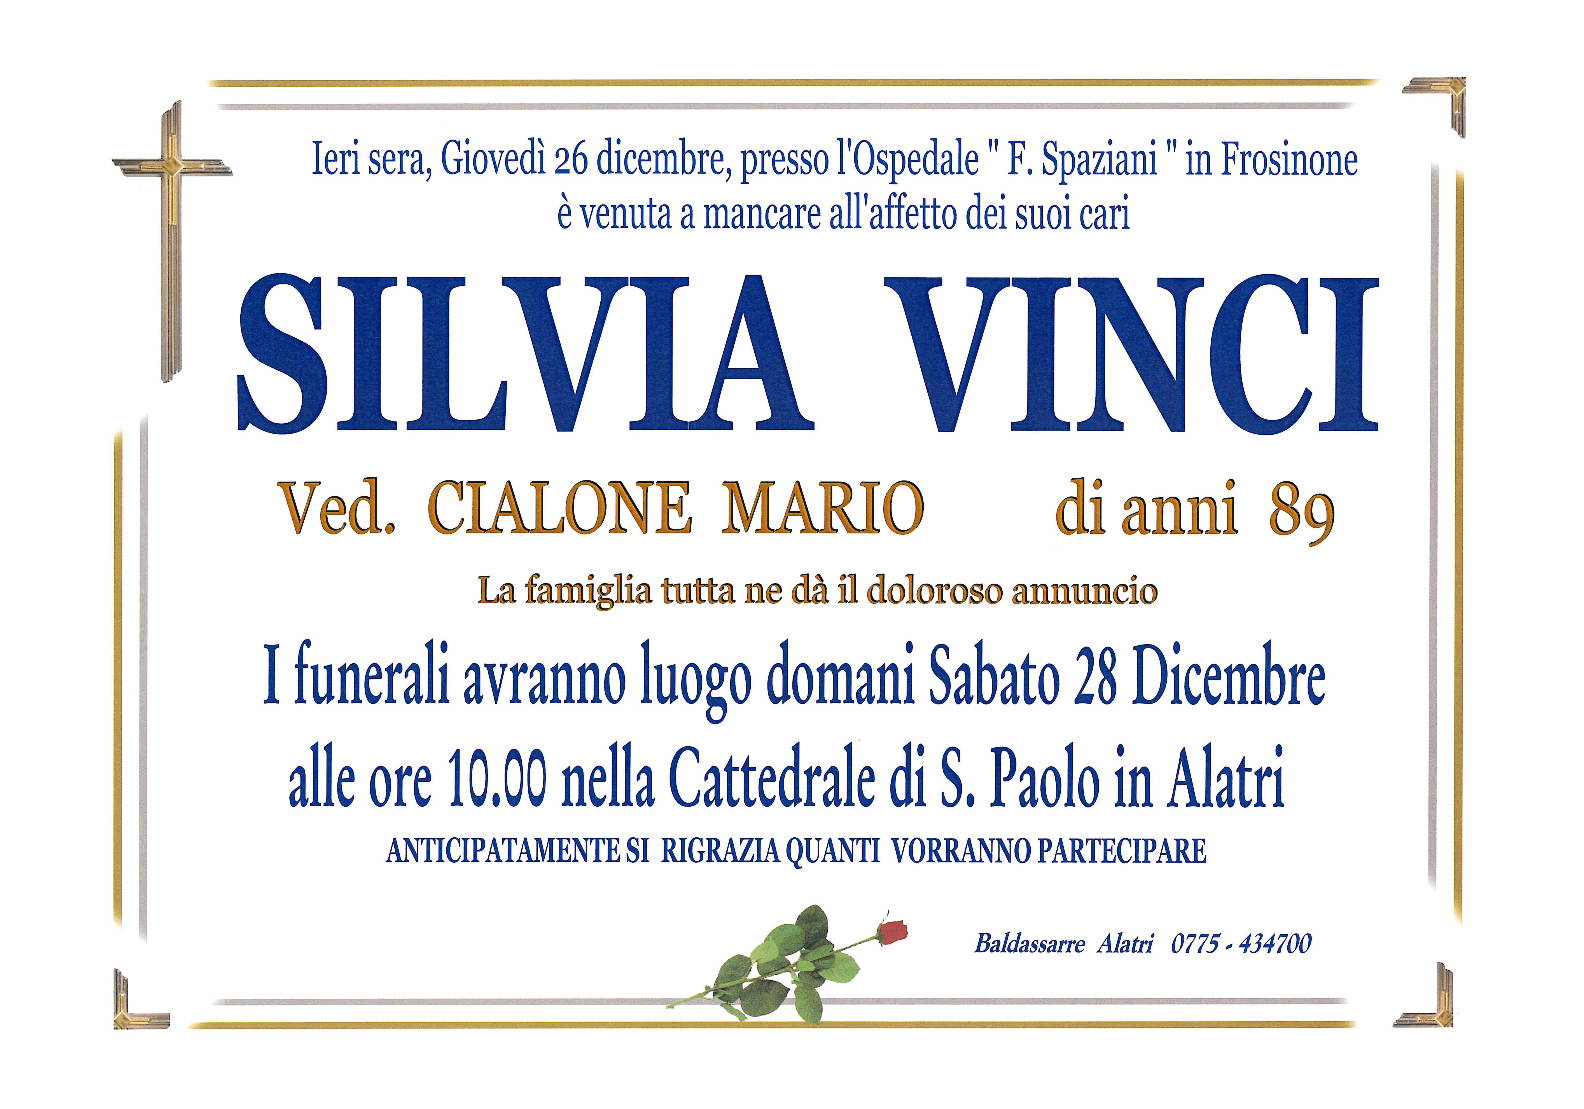 Silvia Vinci